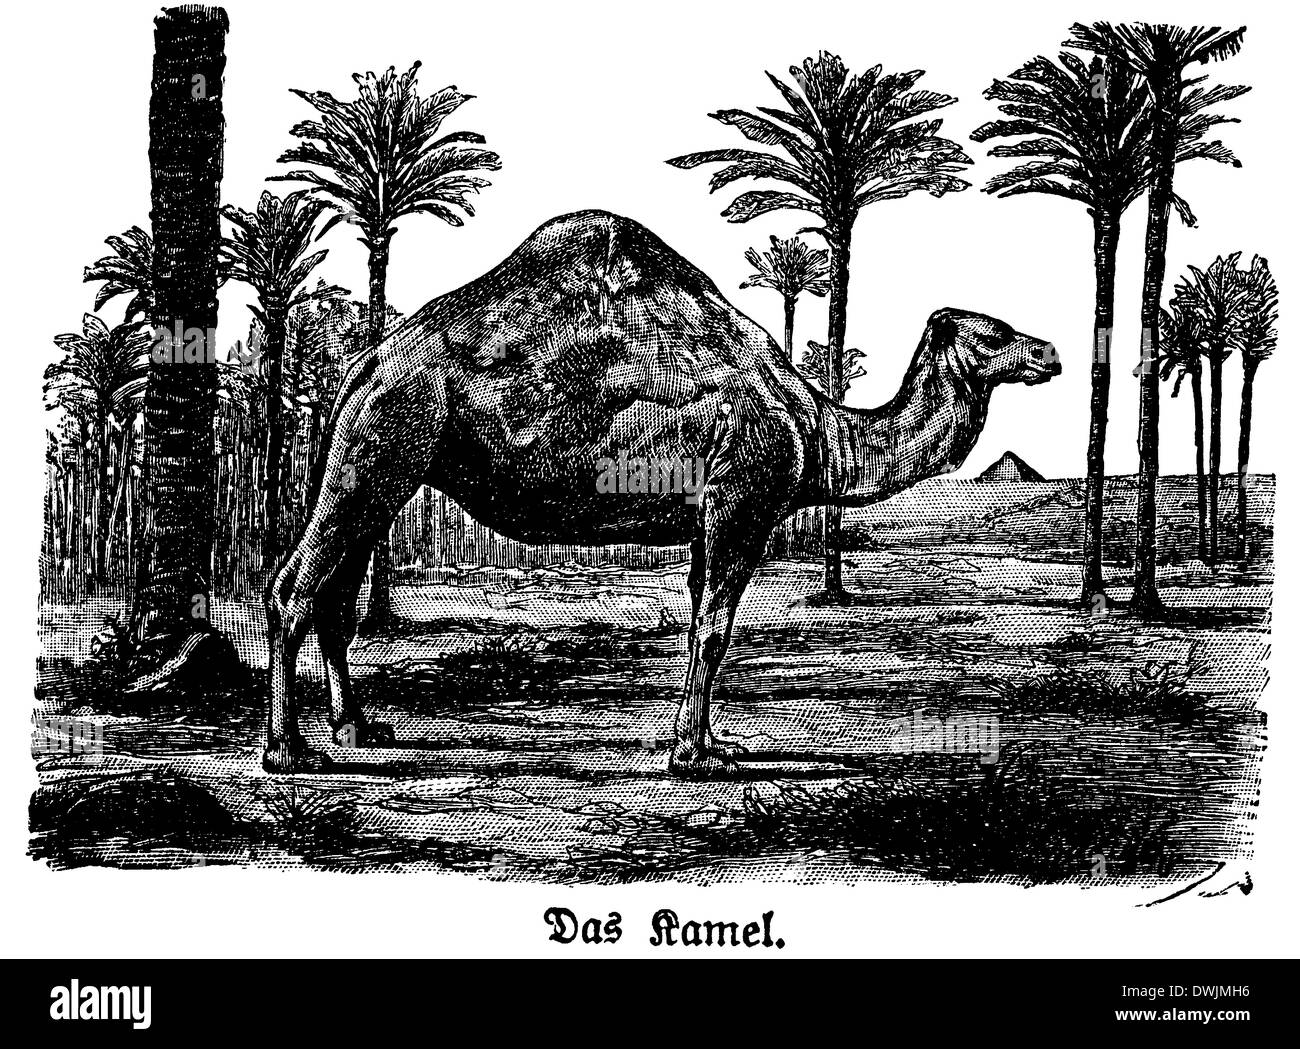 Camello Foto de stock